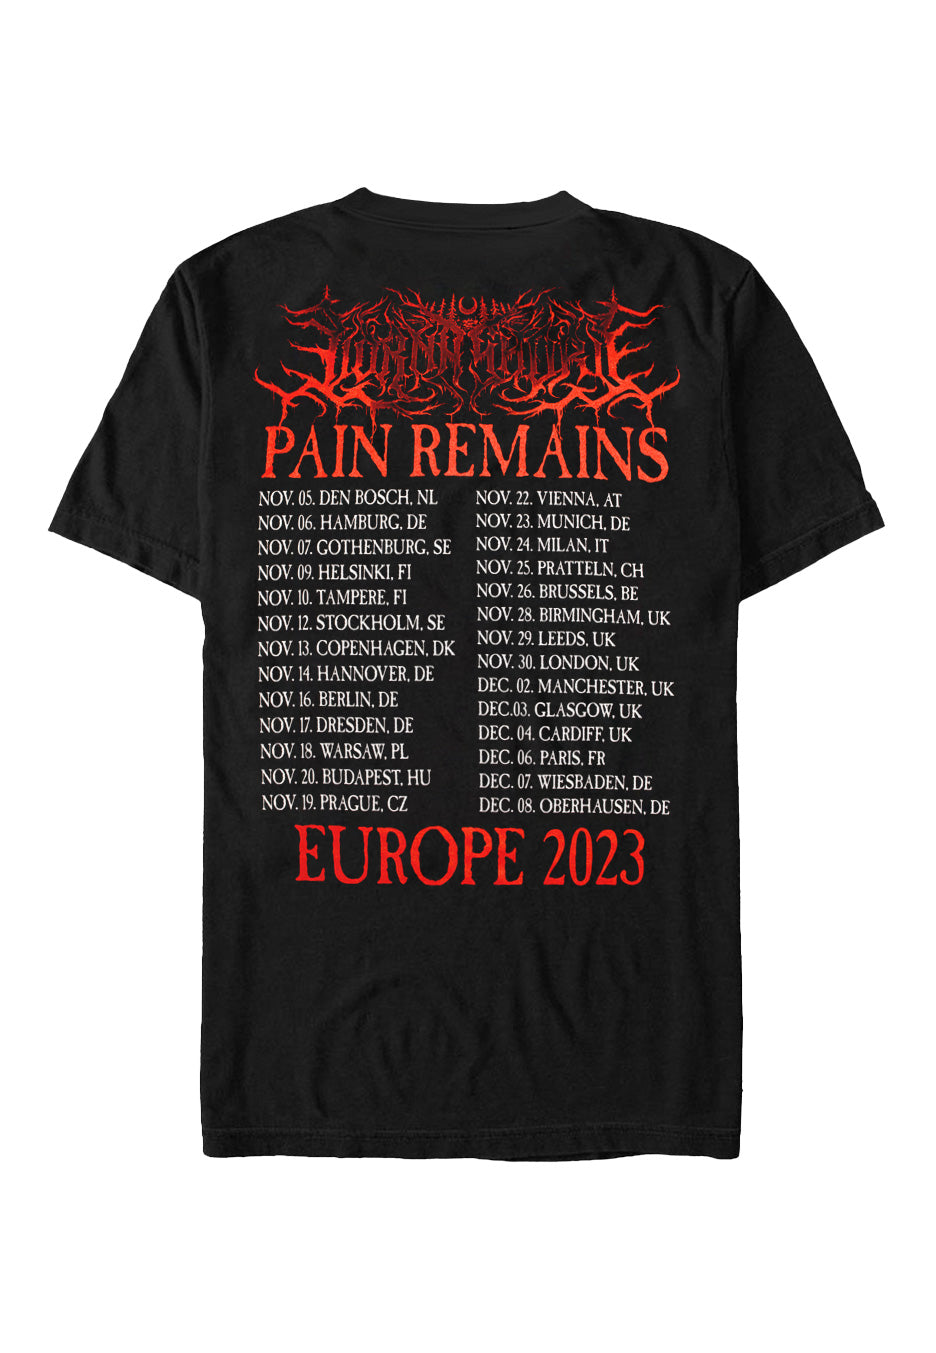 Lorna Shore - Pain Remains Tour 2023 - T-Shirt